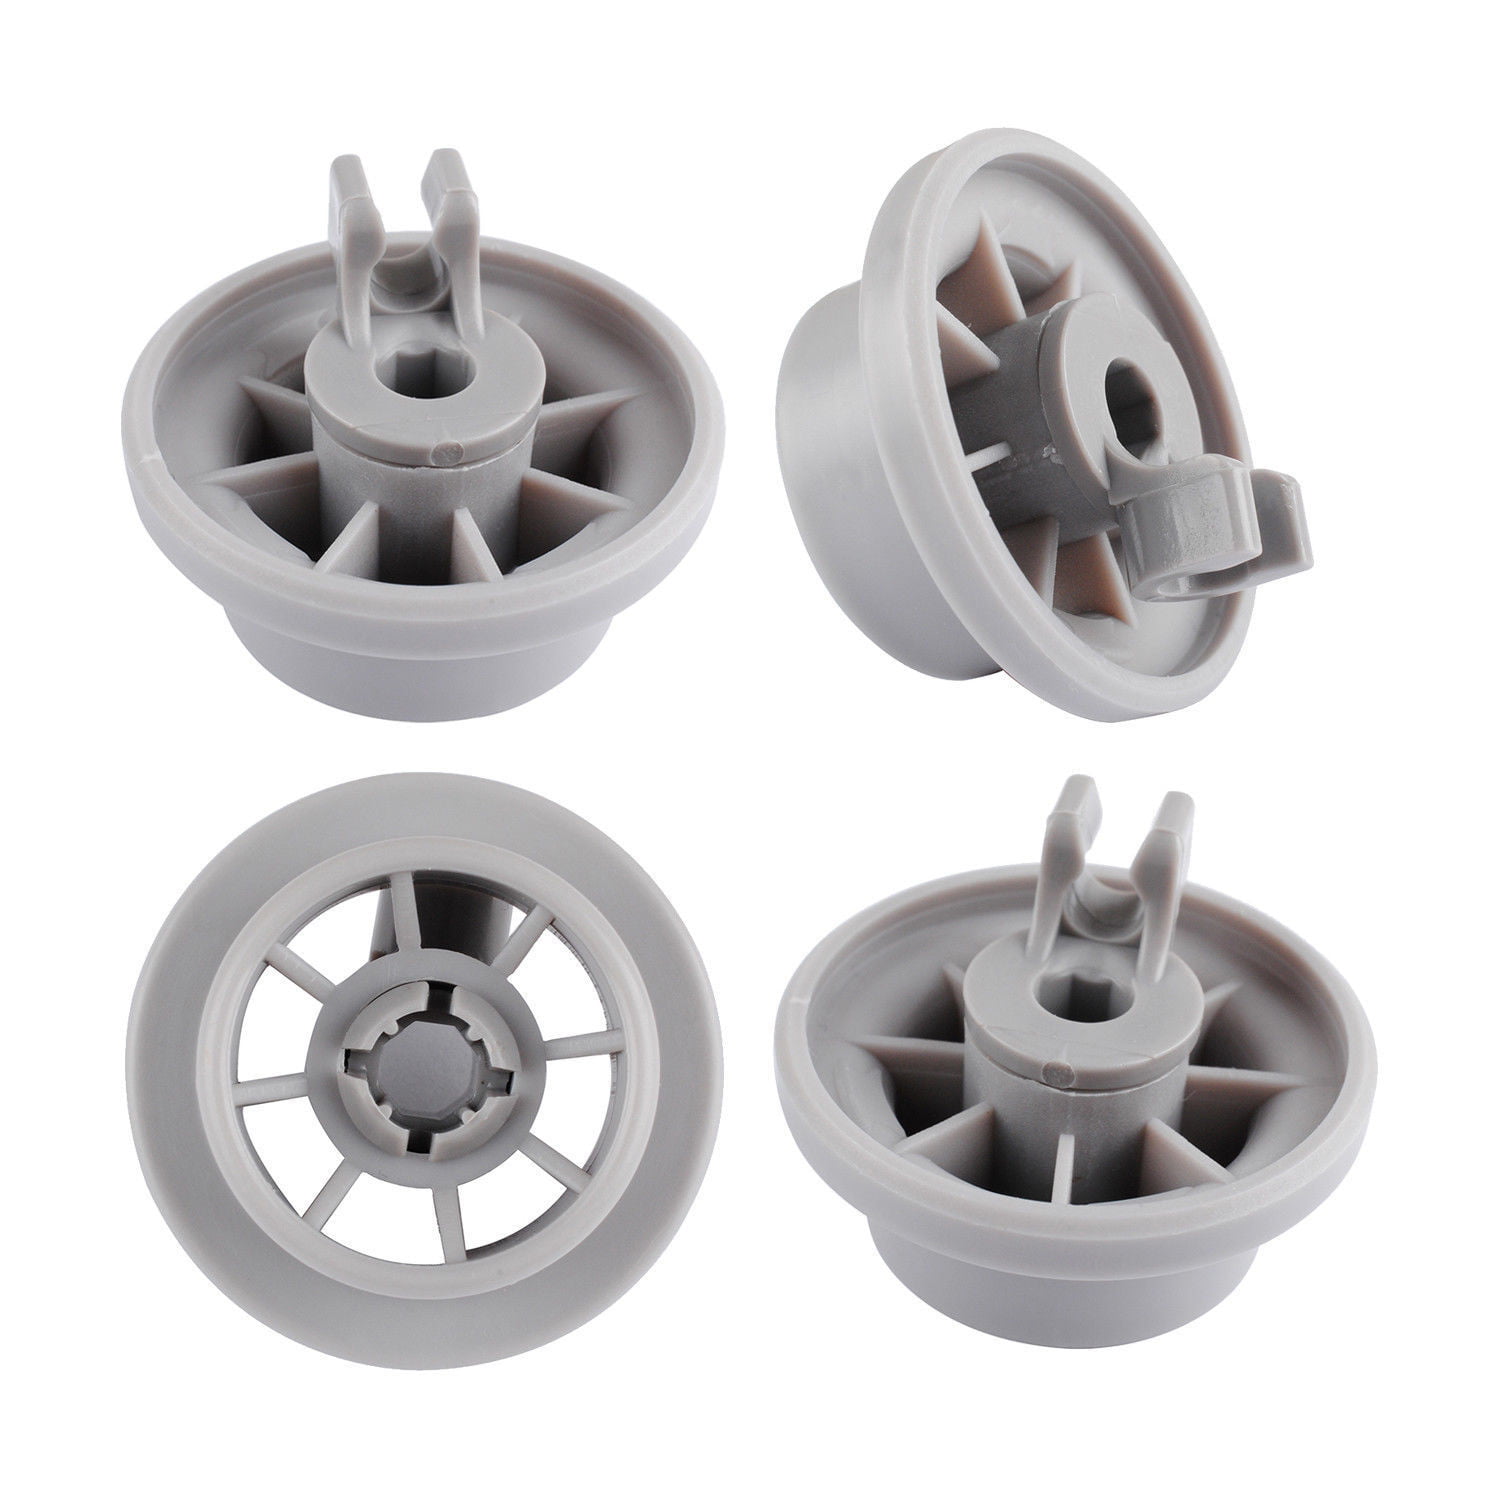 4 X For Bosch Siemens Neff Dishwasher Rack Basket Wheel Spare Part Accessories 